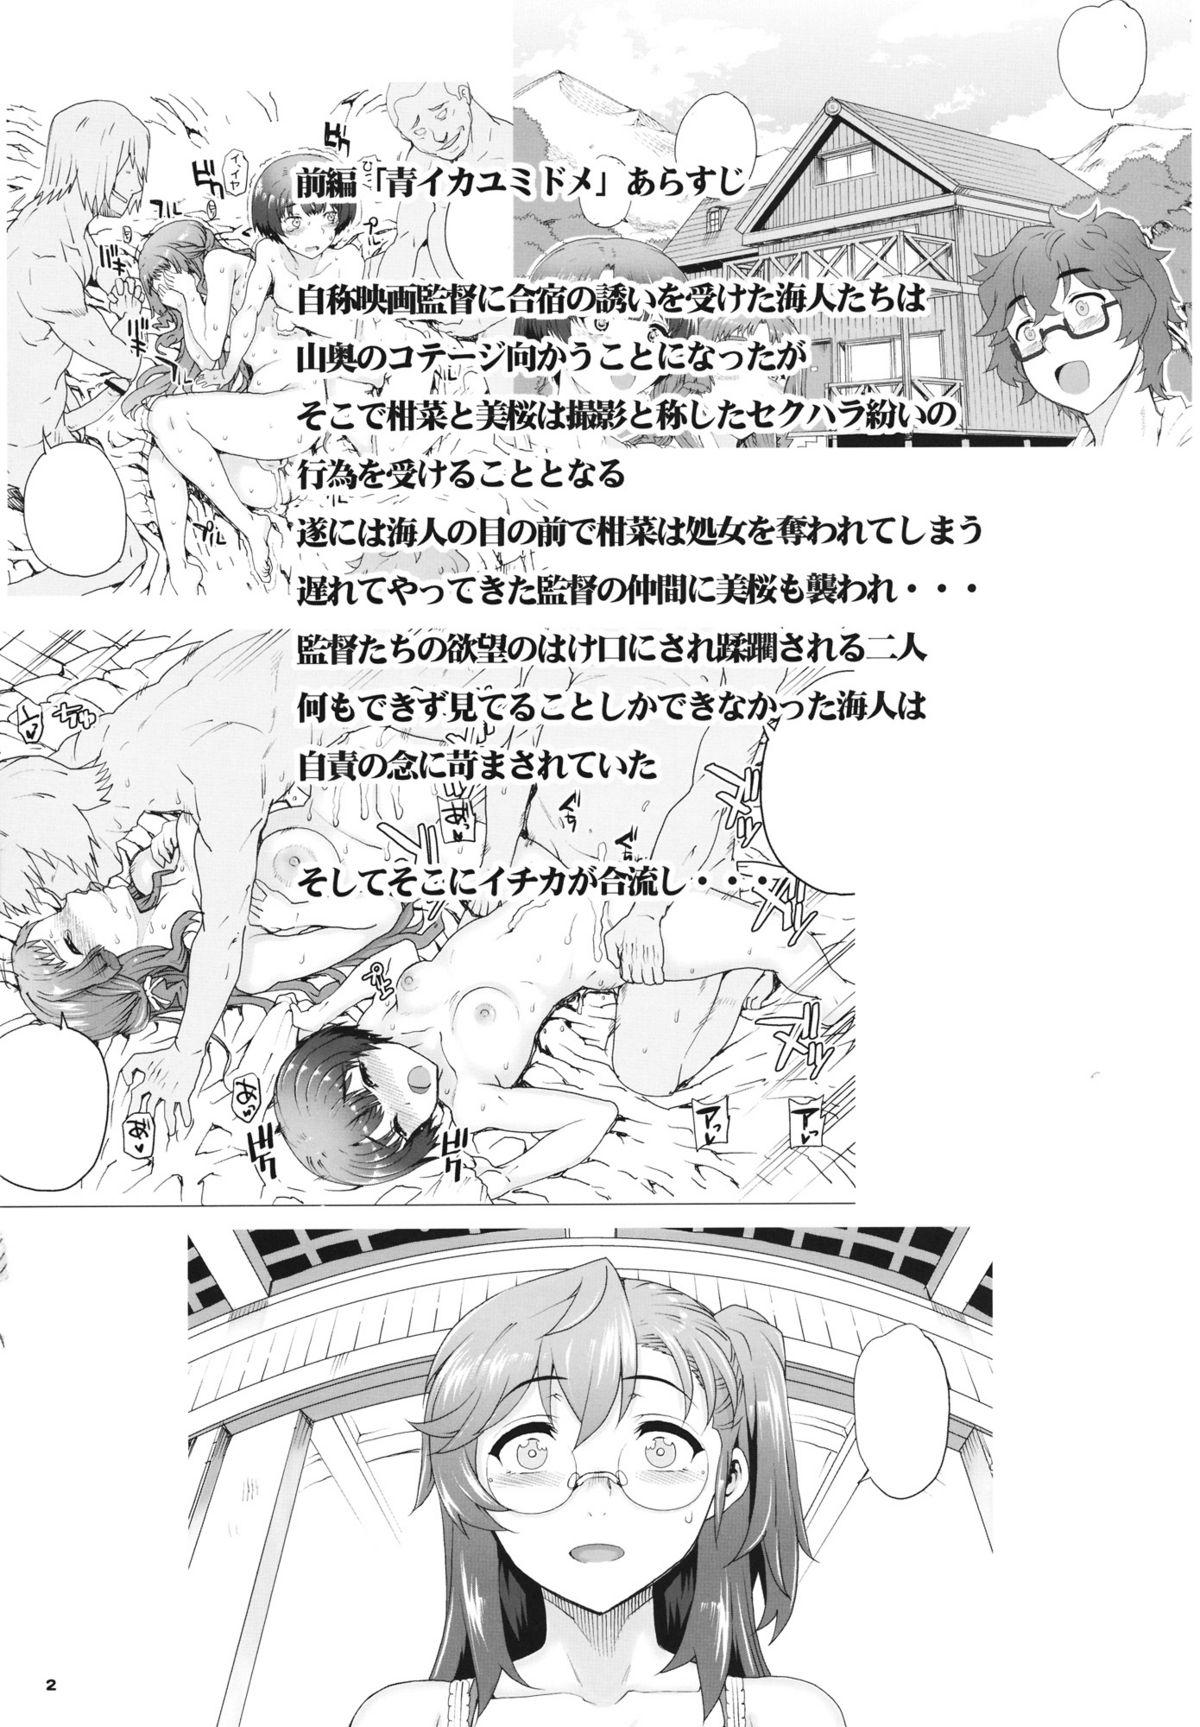 Roundass Akai Kayumidome - Ano natsu de matteru Exhib - Page 3